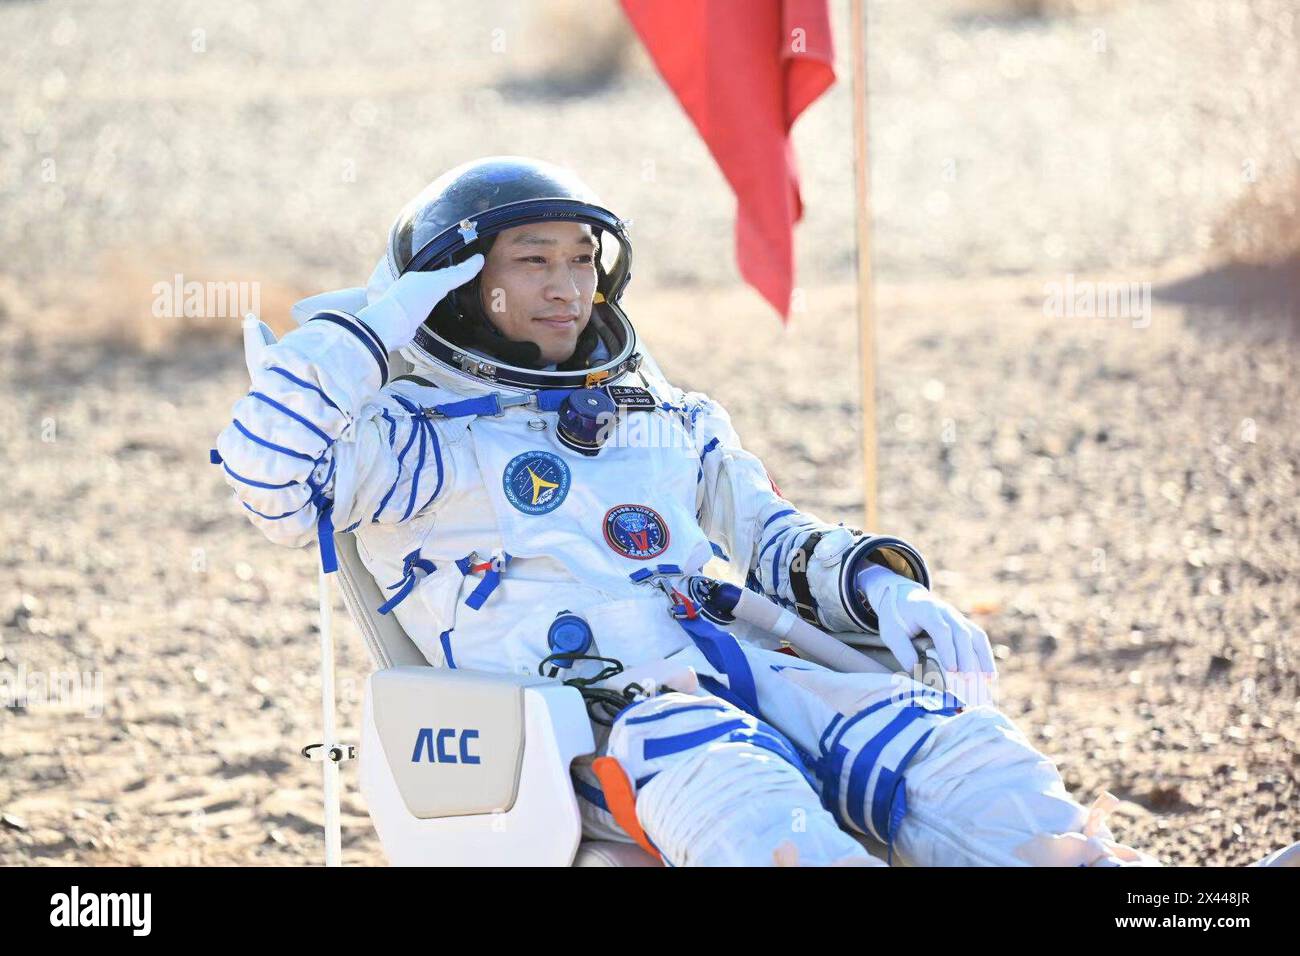 Sito di atterraggio di Dongfeng. 30 aprile 2024. L'astronauta Jiang Xinlin è fuori dalla capsula di ritorno della navicella spaziale con equipaggio Shenzhou-17 presso il sito di atterraggio di Dongfeng nella regione autonoma della Mongolia interna della Cina settentrionale, il 30 aprile 2024. La capsula di ritorno della navicella spaziale Shenzhou-17 con equipaggio, che trasporta gli astronauti Tang Hongbo, Tang Shengjie e Jiang Xinlin, è atterrata martedì presso il sito di atterraggio di Dongfeng nella regione autonoma della Mongolia interna della Cina settentrionale. I tre astronauti sono tutti in buone condizioni di salute, secondo la China Manned Space Agency. Crediti: BEI He/Xinhua/Alamy Live News Foto Stock